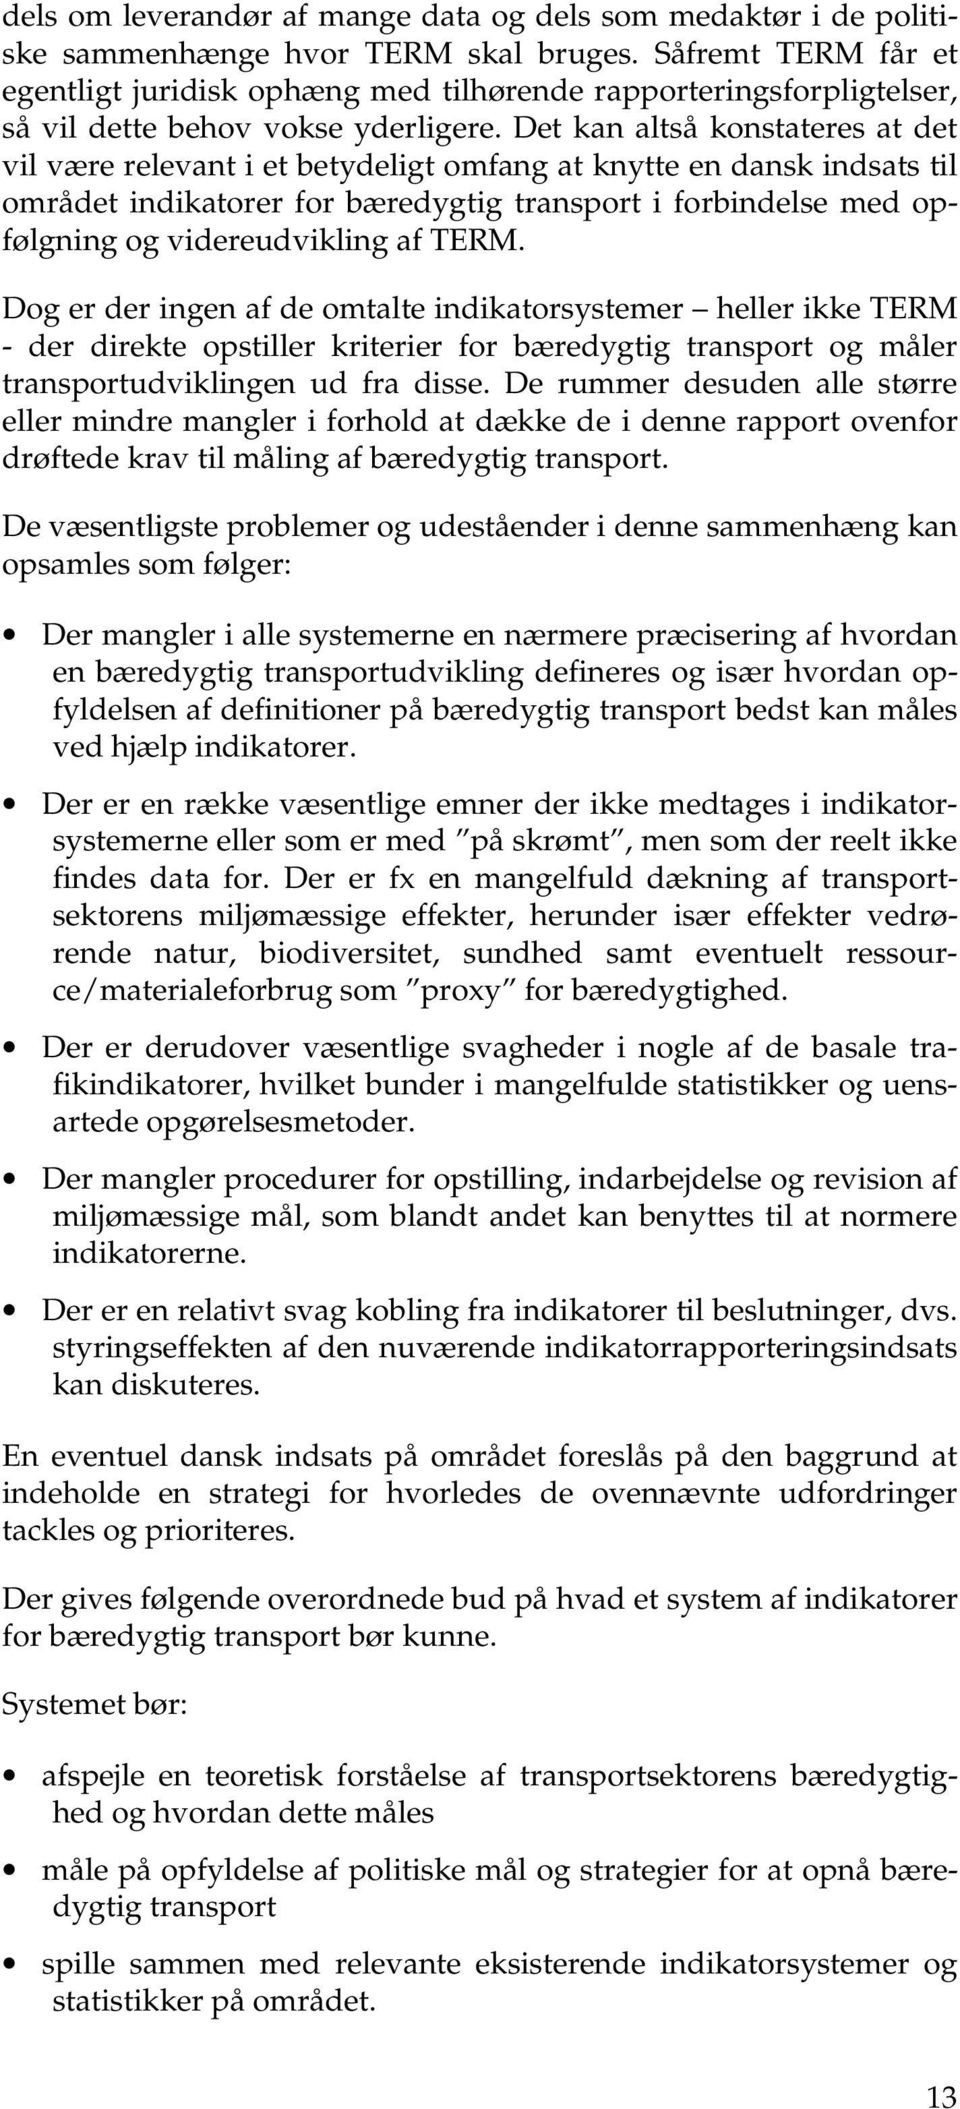 Det kan altså konstateres at det vil være relevant i et betydeligt omfang at knytte en dansk indsats til området indikatorer for bæredygtig transport i forbindelse med opfølgning og videreudvikling